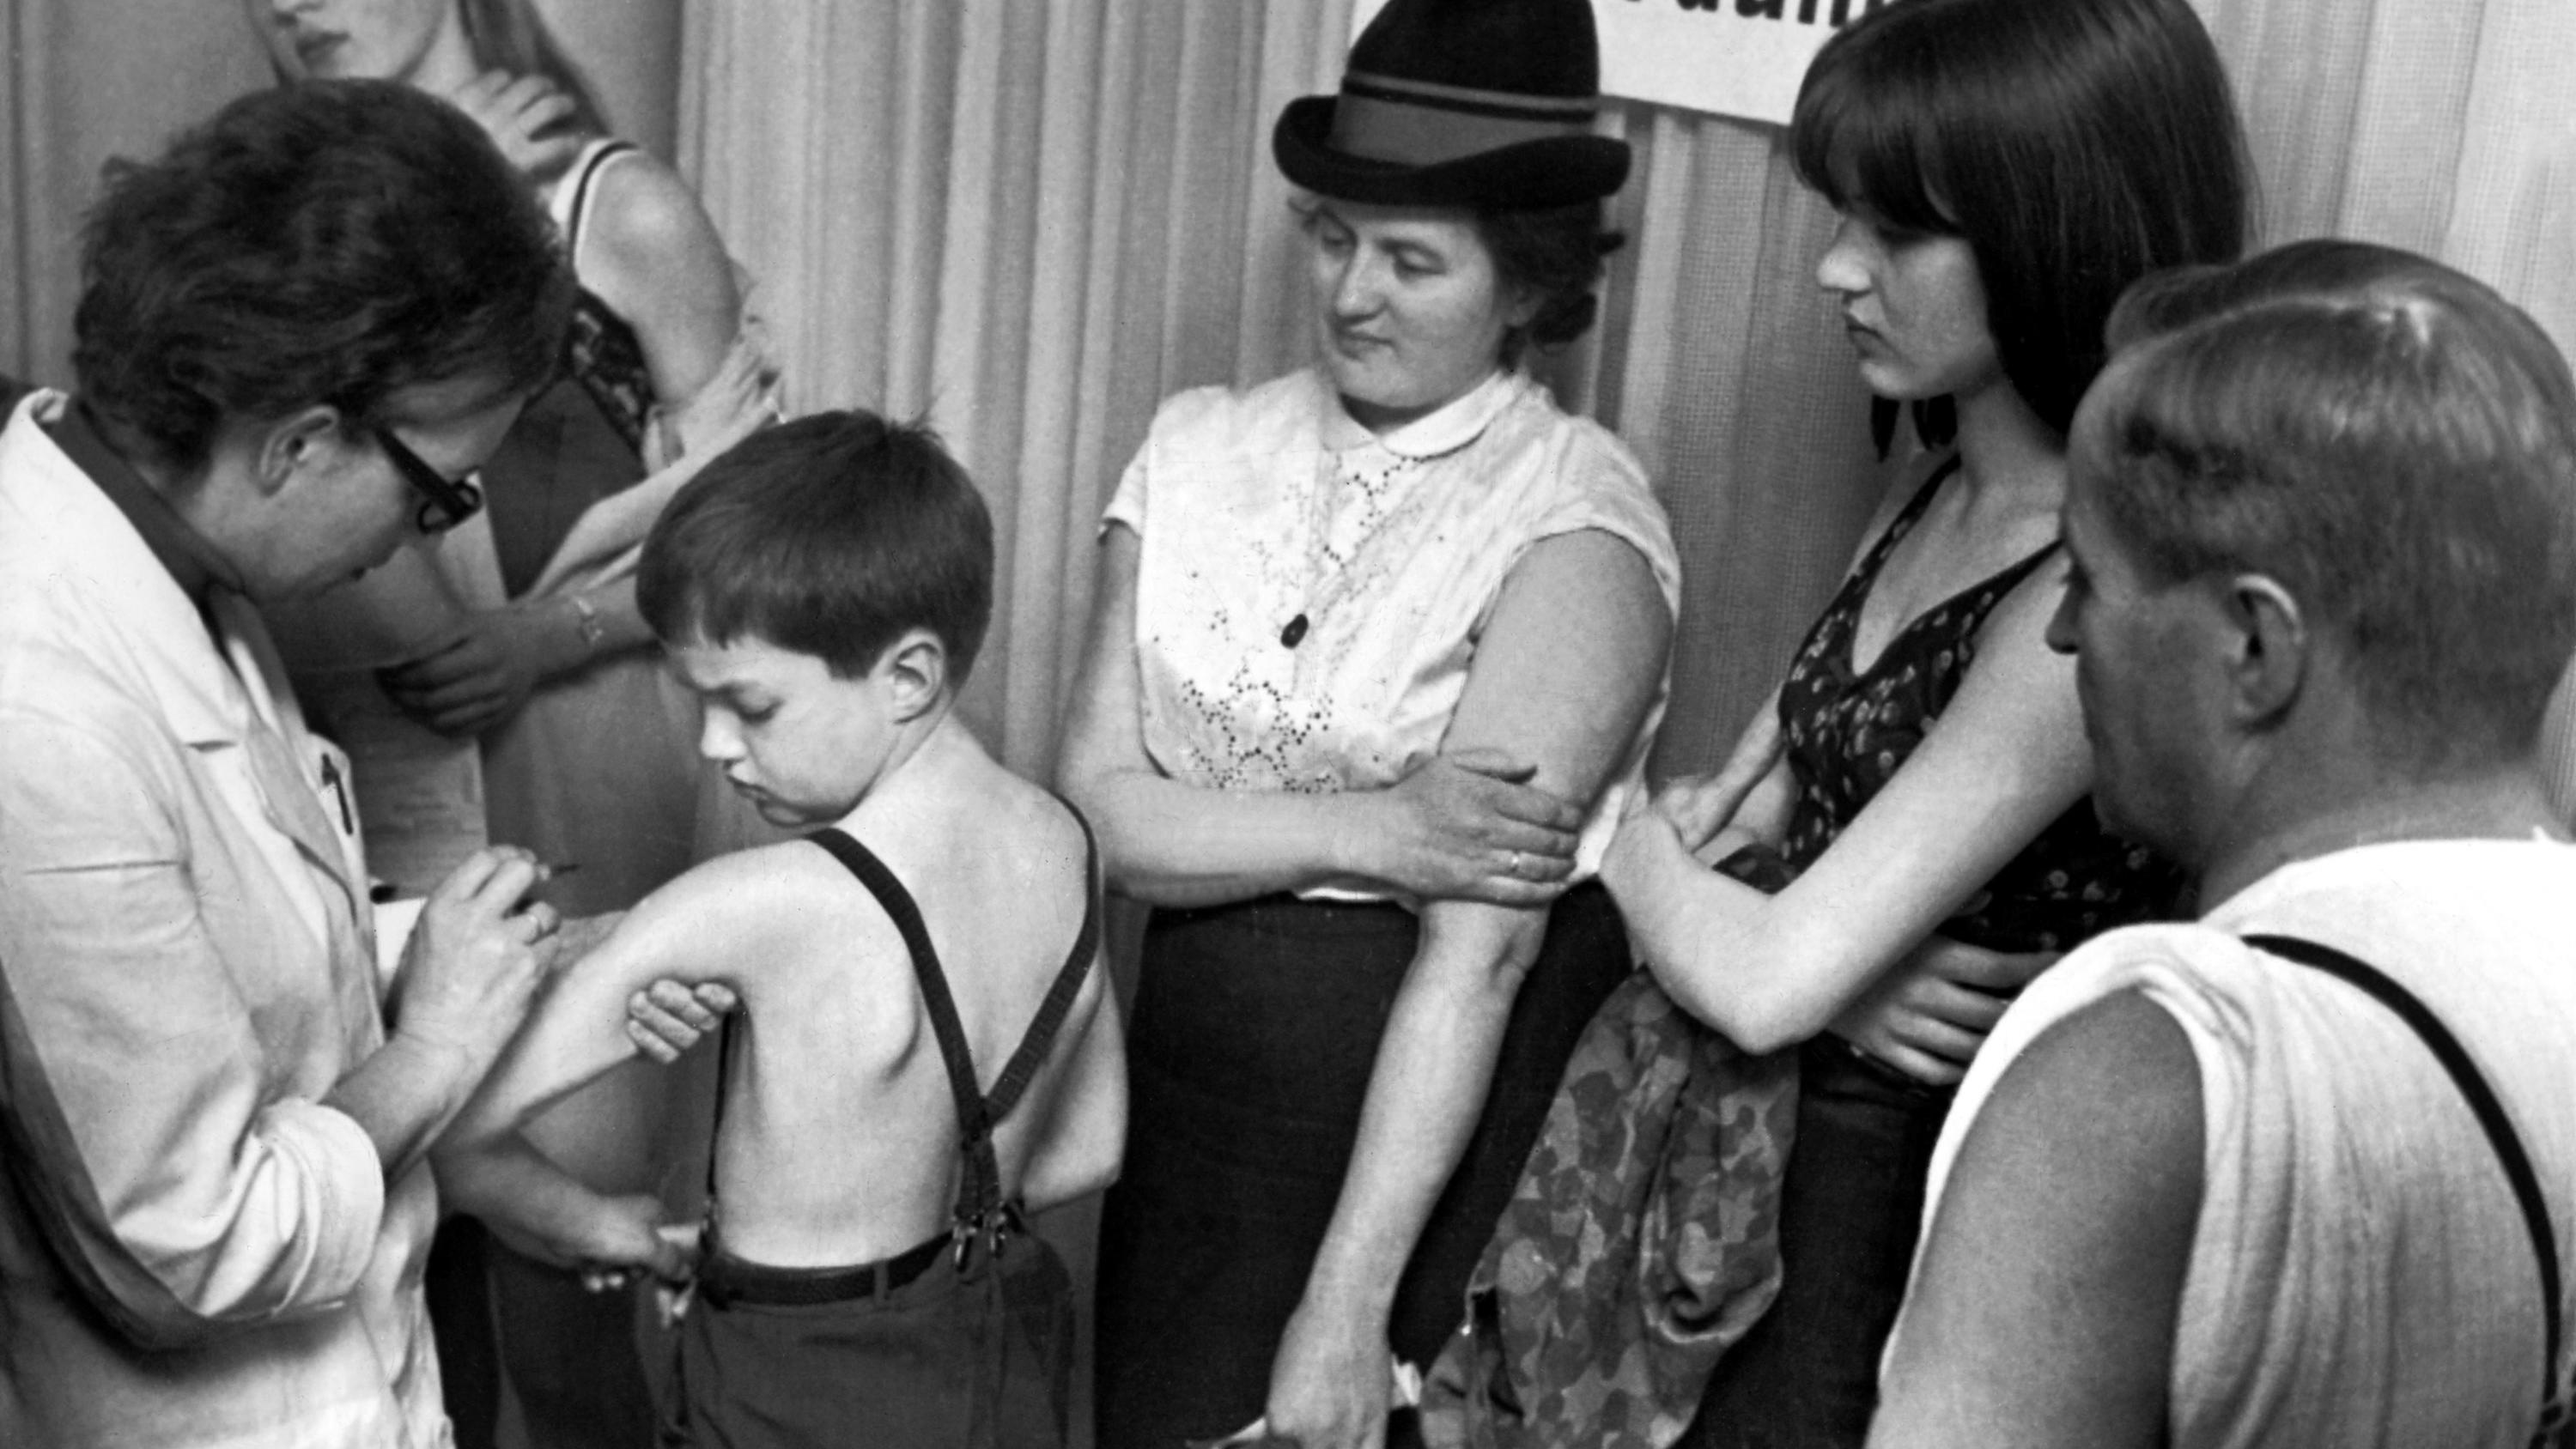 ARCHIV - 26.03.1967, Niedersachsen, Hannover: Eine Familie geht zur Pockenschutzimpfung. (zu dpa "(zu dpa "Kommt die Pockenimpfung mit dem Affenpocken-Ausbruch zurück?") Foto: Wolfgang Weihs/dpa +++ dpa-Bildfunk +++